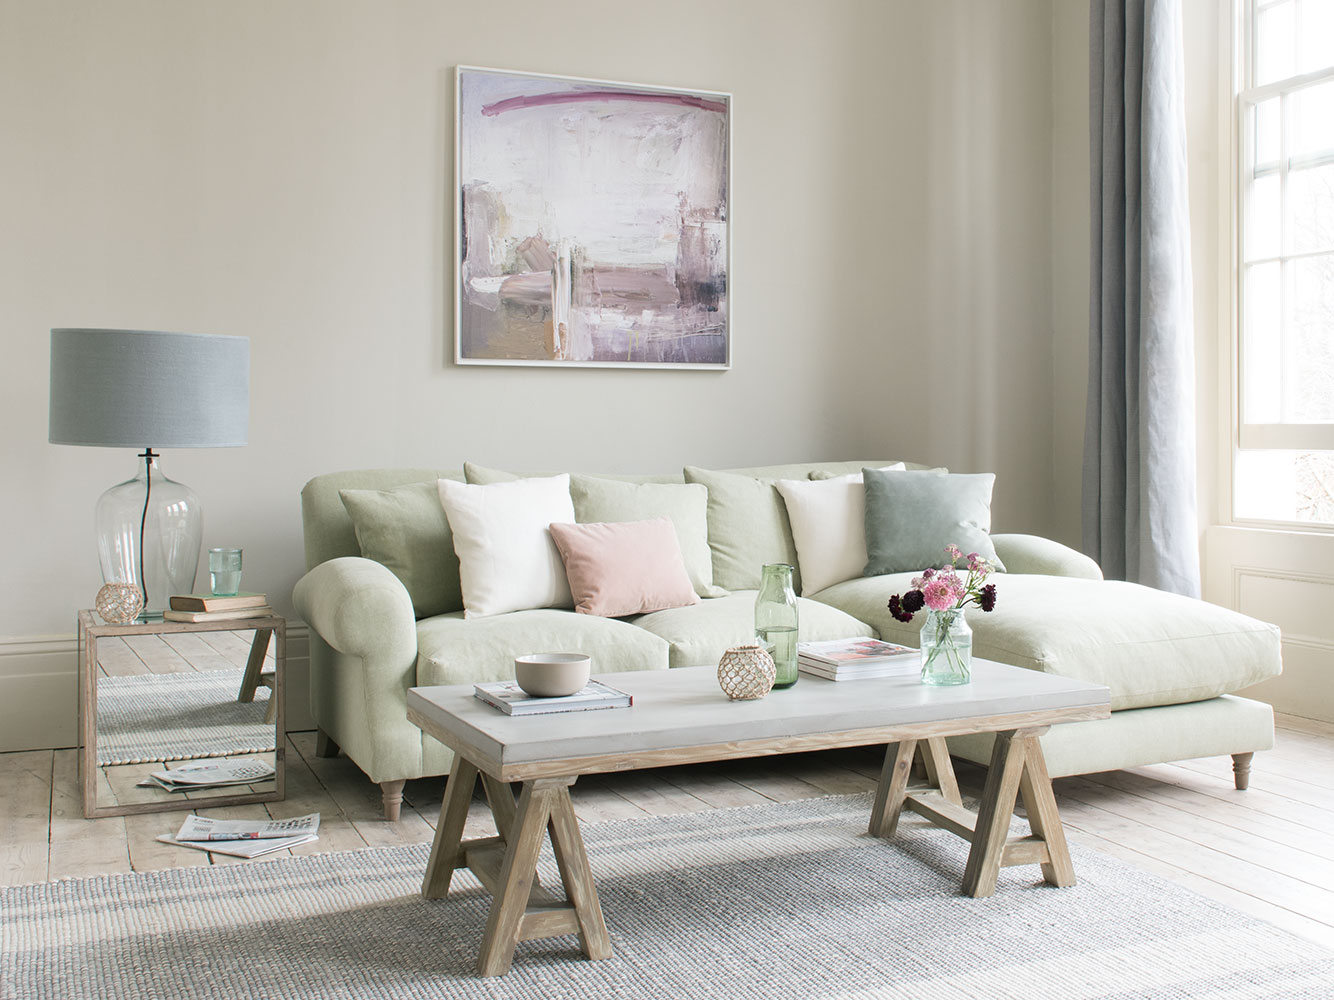 Một vài mẹo nhỏ giúp việc lựa chọn phong cách sofa cho gia đình trở nên hoàn hảo